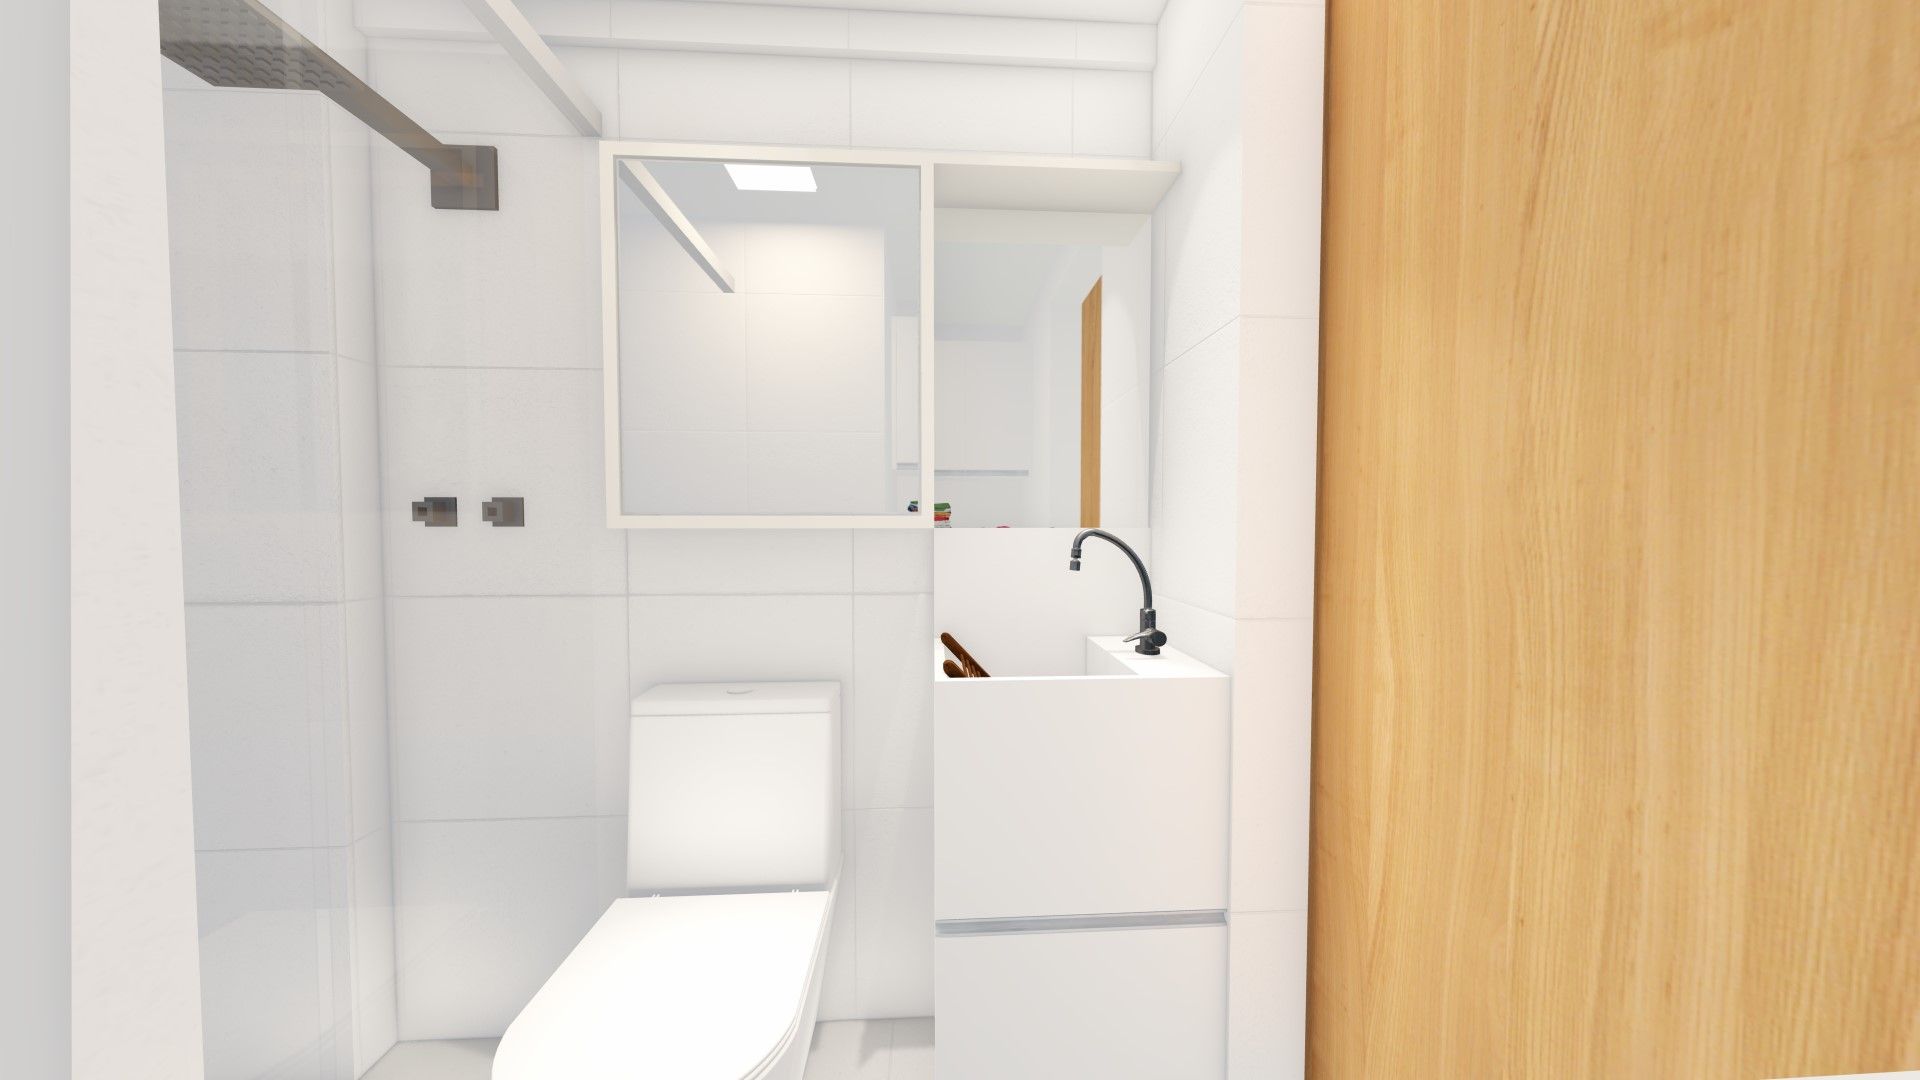 Flat de 30m² moderno, funcional e minimalista., Arquitetura Sônia Beltrão & associados Arquitetura Sônia Beltrão & associados حمام